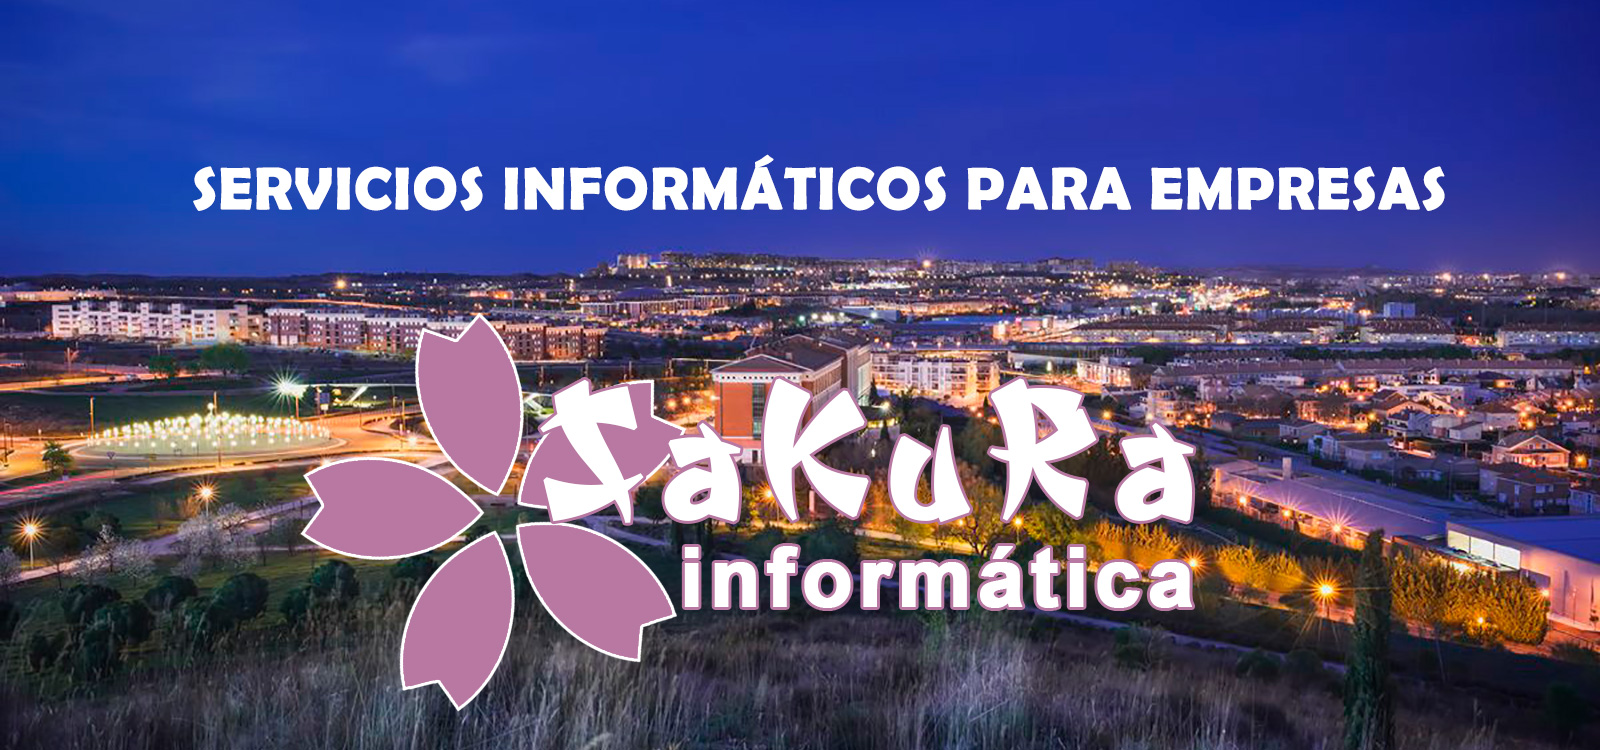 SaKuRa Informática